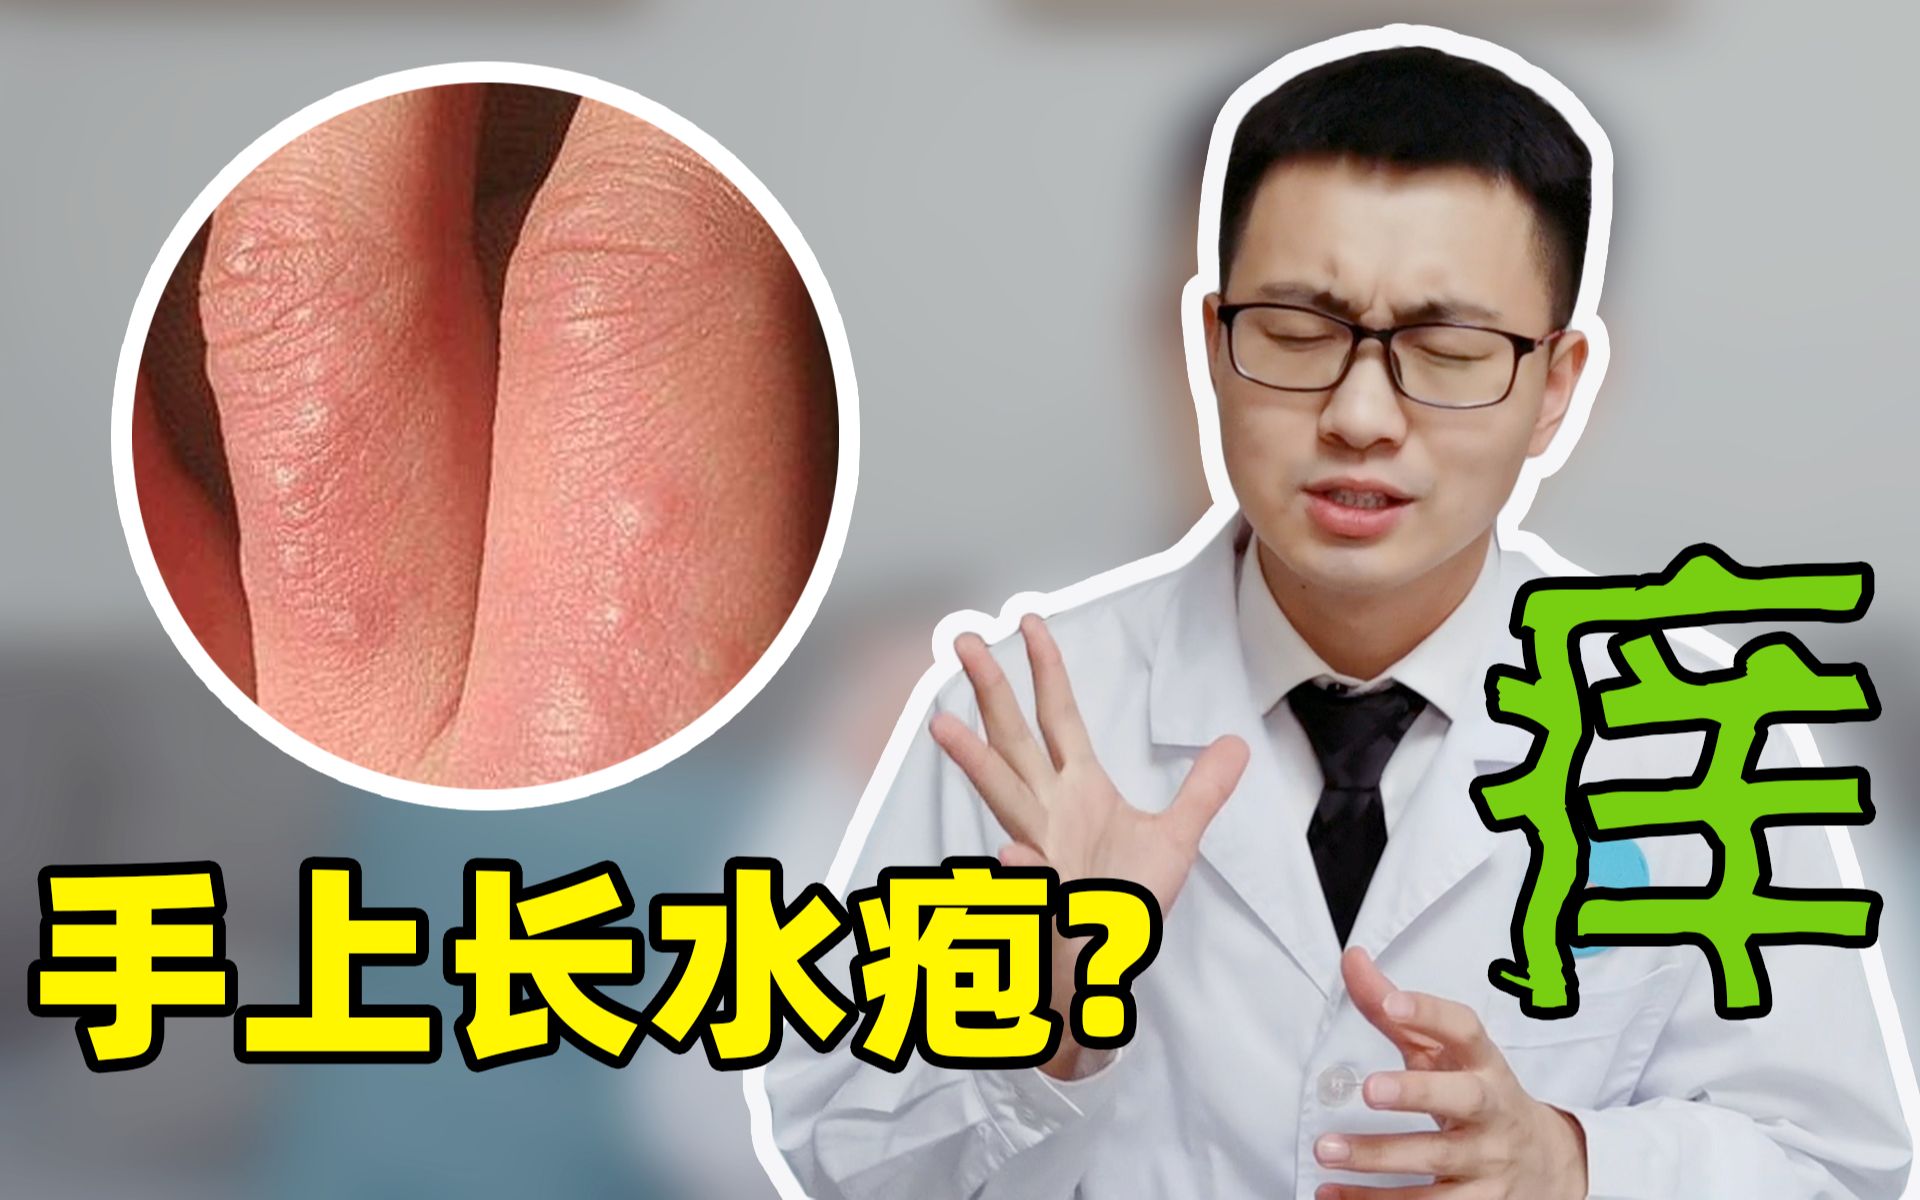 「汗疱疹」如何根治？它与湿疹的关系？与手足癣的区别？都解答在这里了！|手足癣|汗疱疹|湿疹|根治|区别|真菌|症状|治疗|-健康界